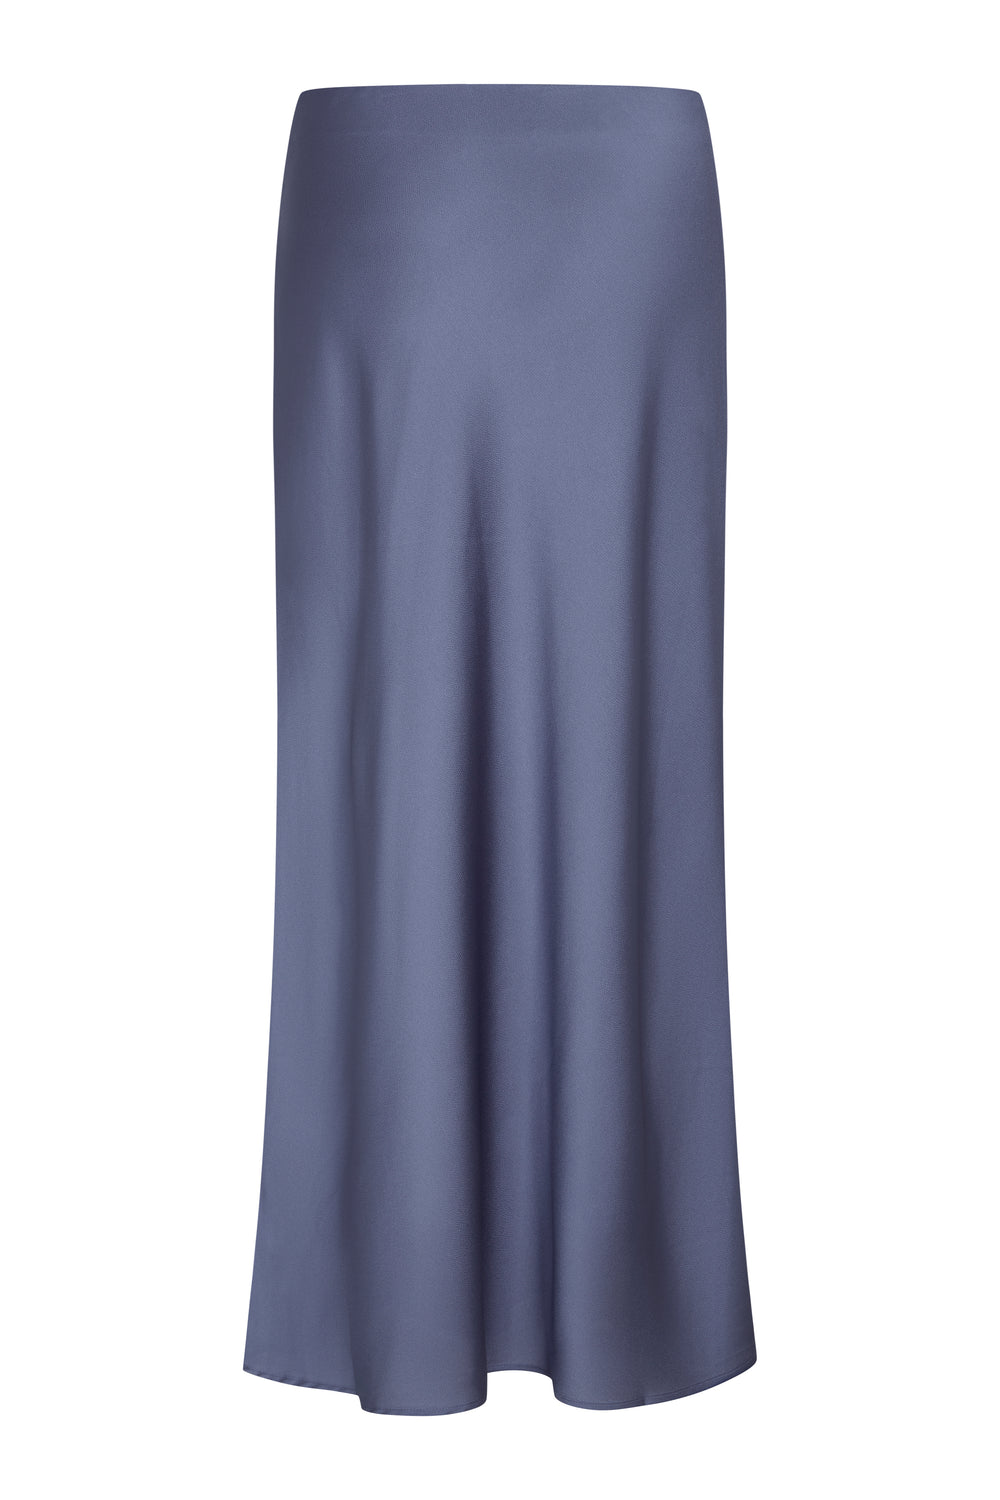 Bruuns Bazaar Women AcaciaBBJoanelle skirt Skirt Coastal blue